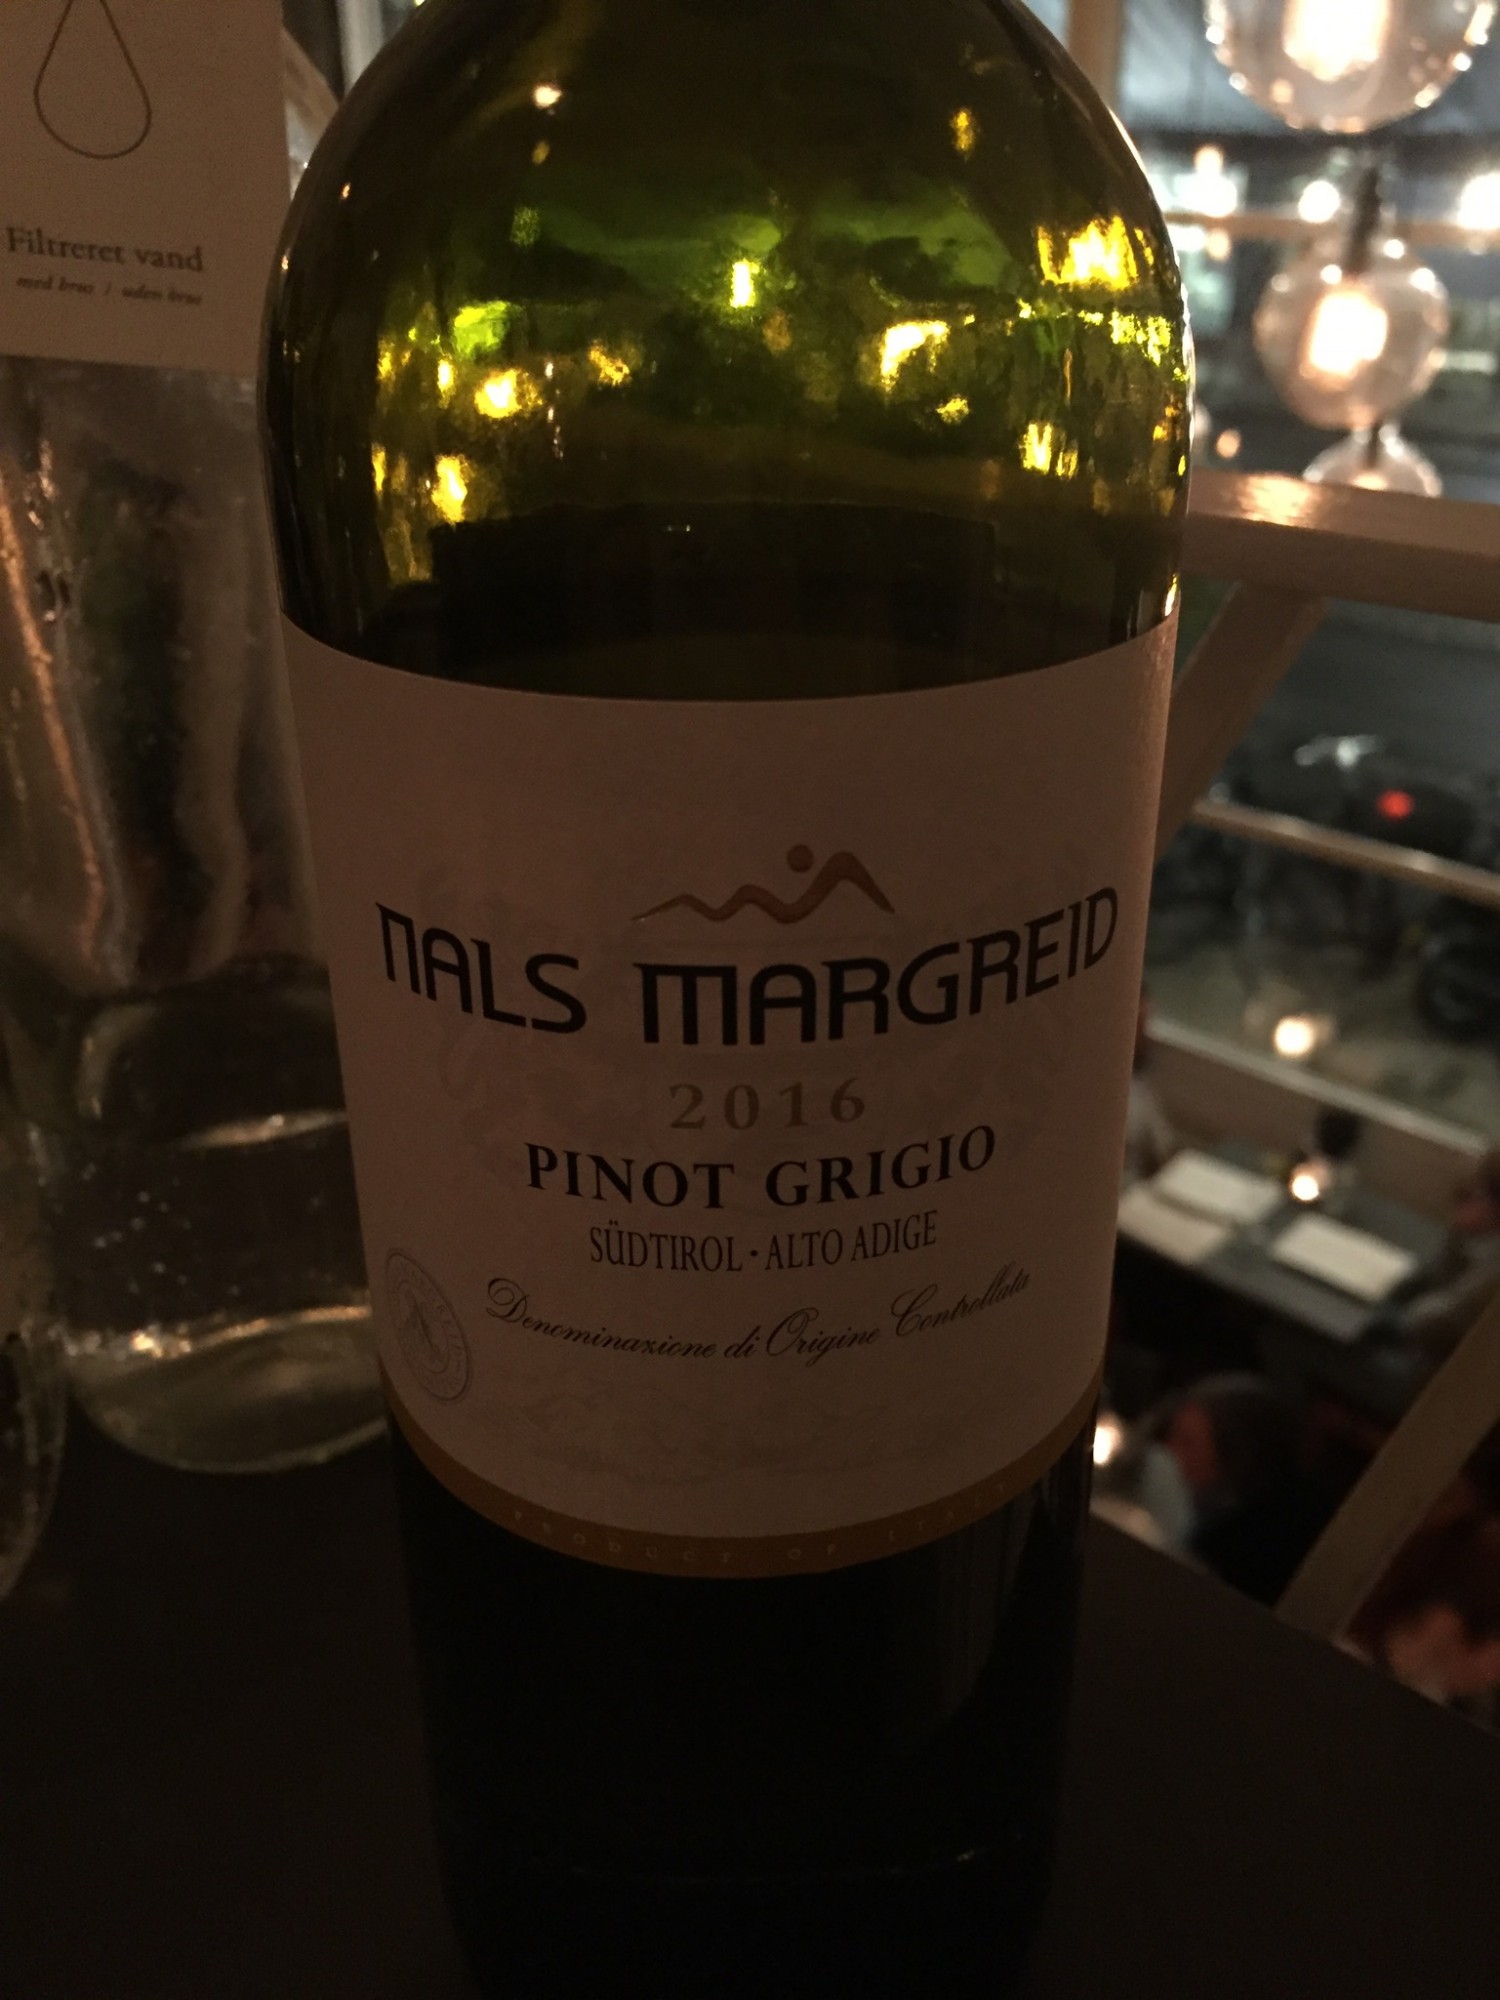 Pinot Grigio, Nals Magried, Südtirol. Pinot Grigio fra det nordlige Italien. Beliggenheden giver en elegant, frisk hvidvin, som er køligere i frugten end hvidvin fra sydligere himmelstrøg